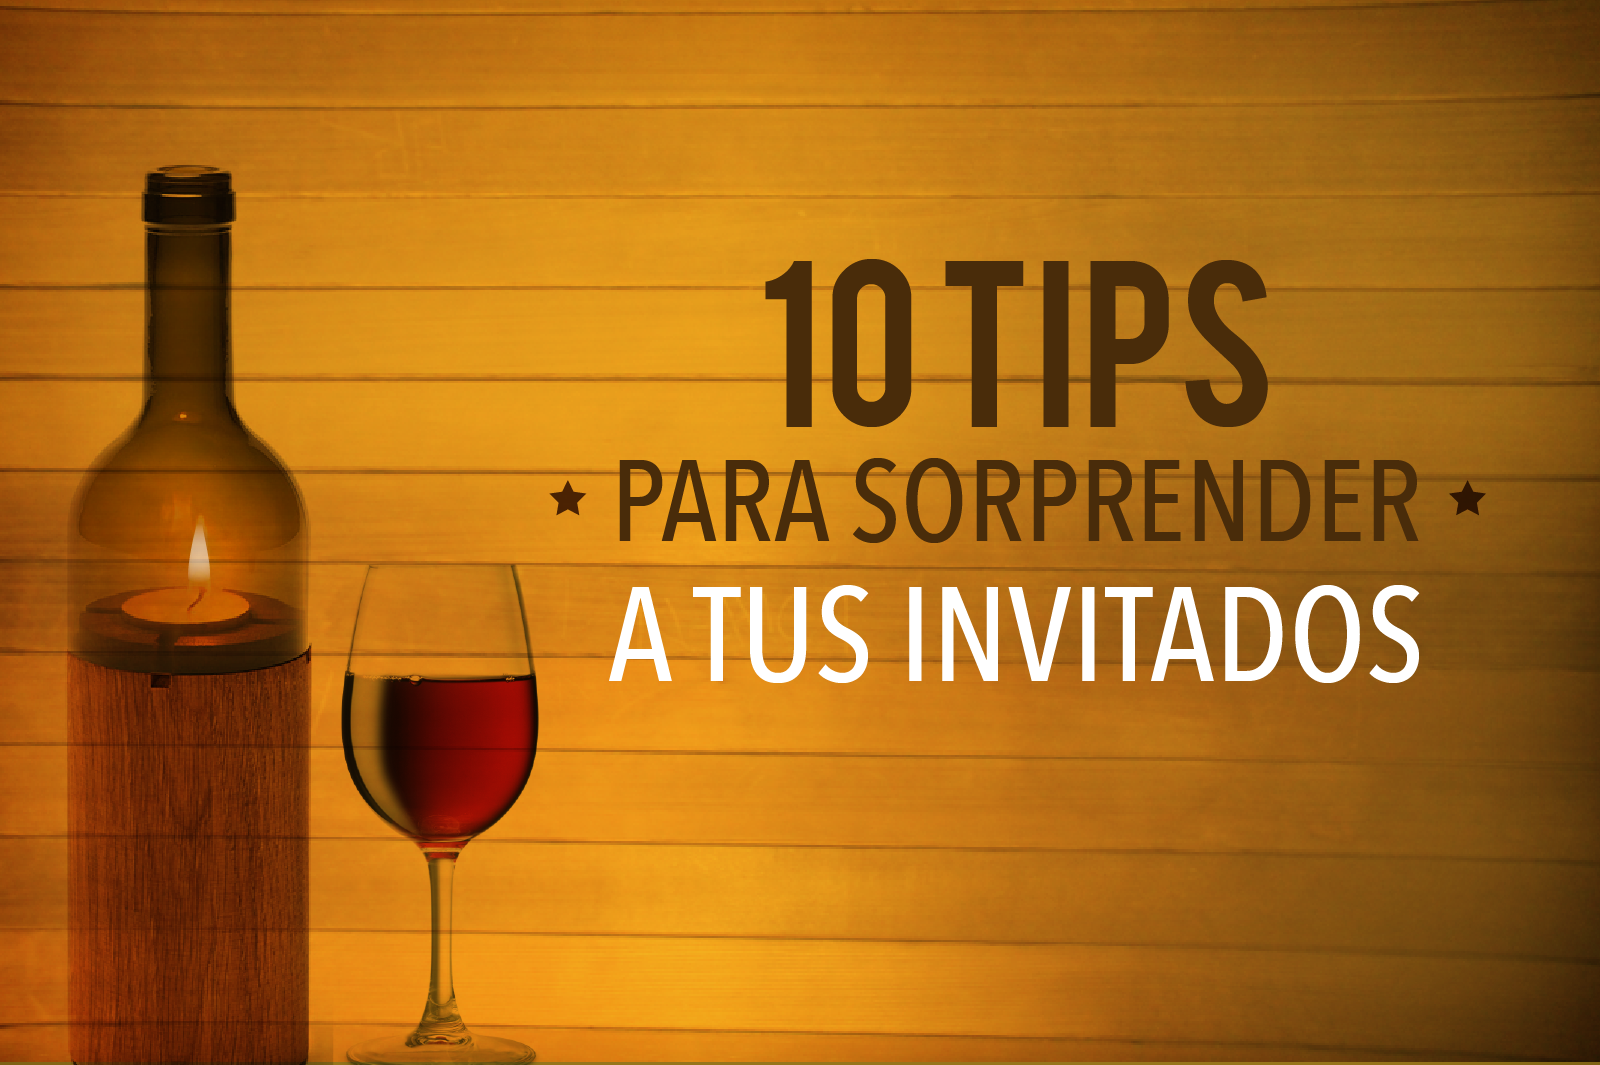 10 tips para sorprender a tus invitados